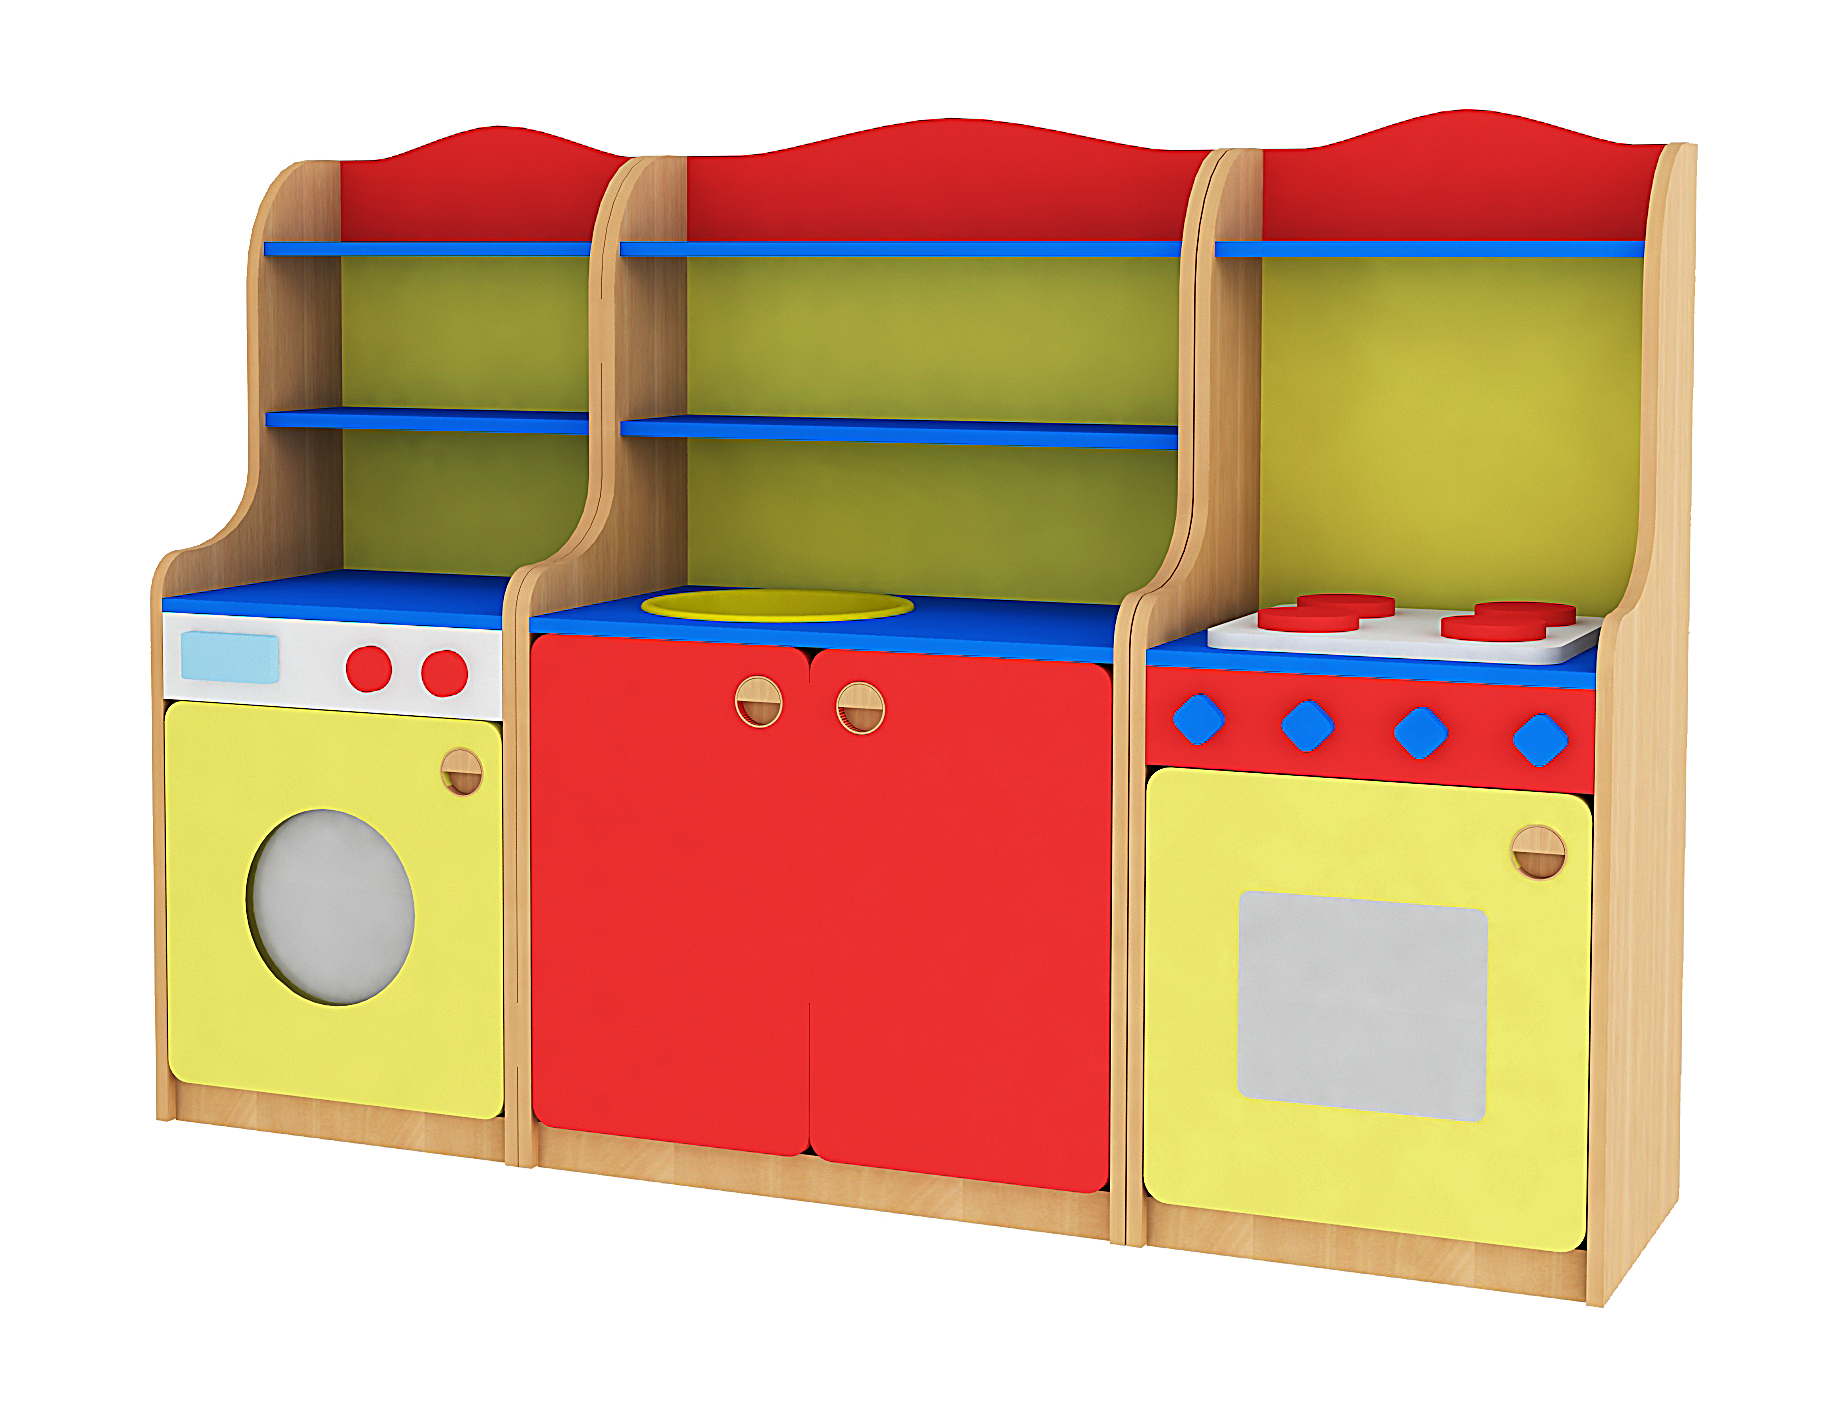 Детская игра мебель. Игровой модуль кухонька для детского сада. Игровая мебель для детского сада. Игровой уголок кухня в детском саду. Игровая мебель кухня для детского сада.